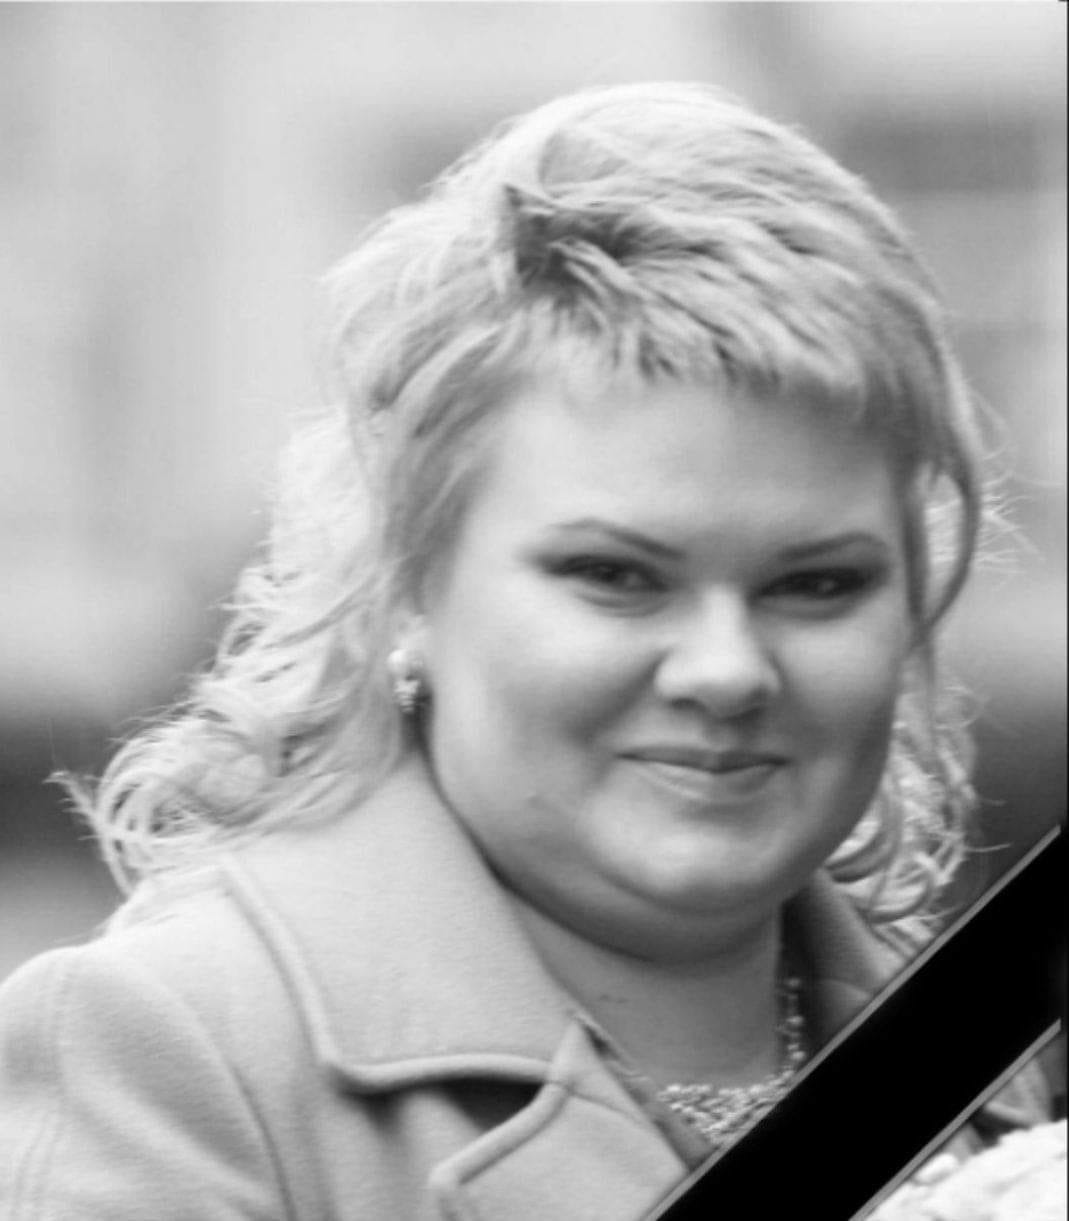 Від COVID-19 померла 39-річна викладачка УжНУ Світлана Володимирівна Загоруйко.